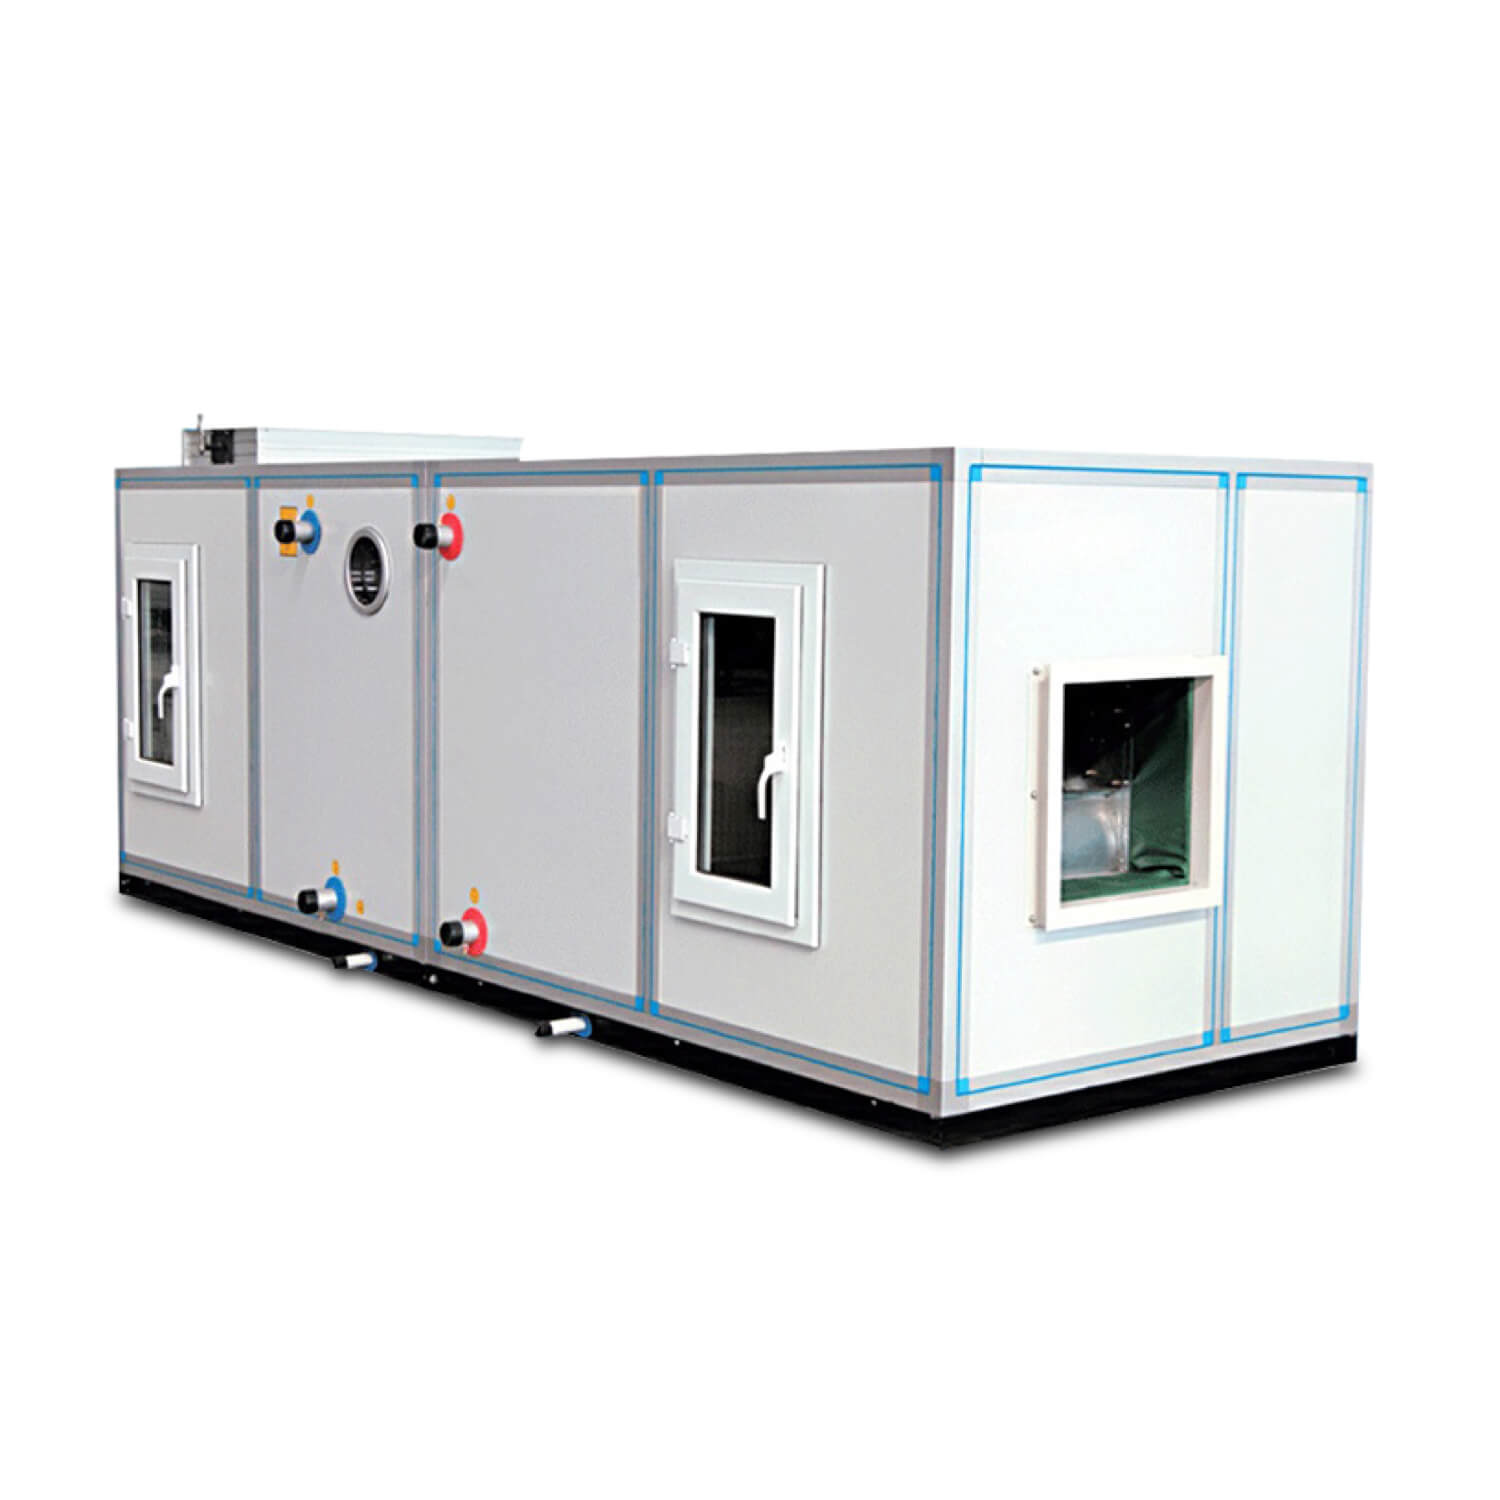 HVAC 시스템 제조 결합형 공기 조화 장치